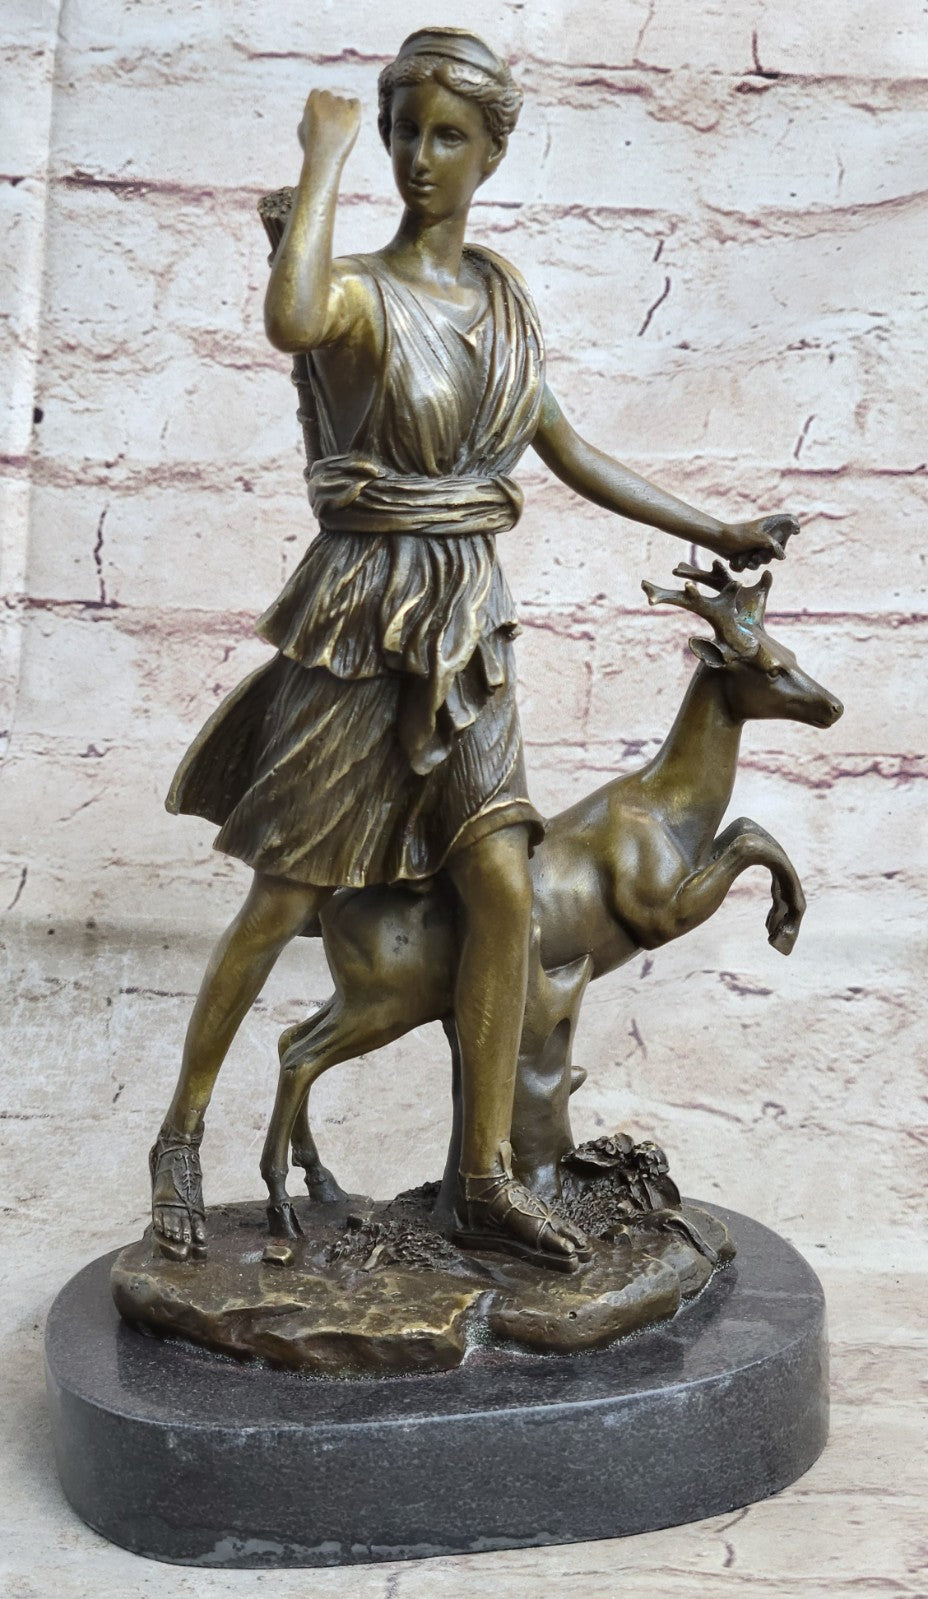 12" Tall Hot Cast Diana The Huntress Artemis Goddess Bronze Sculpture Statue 